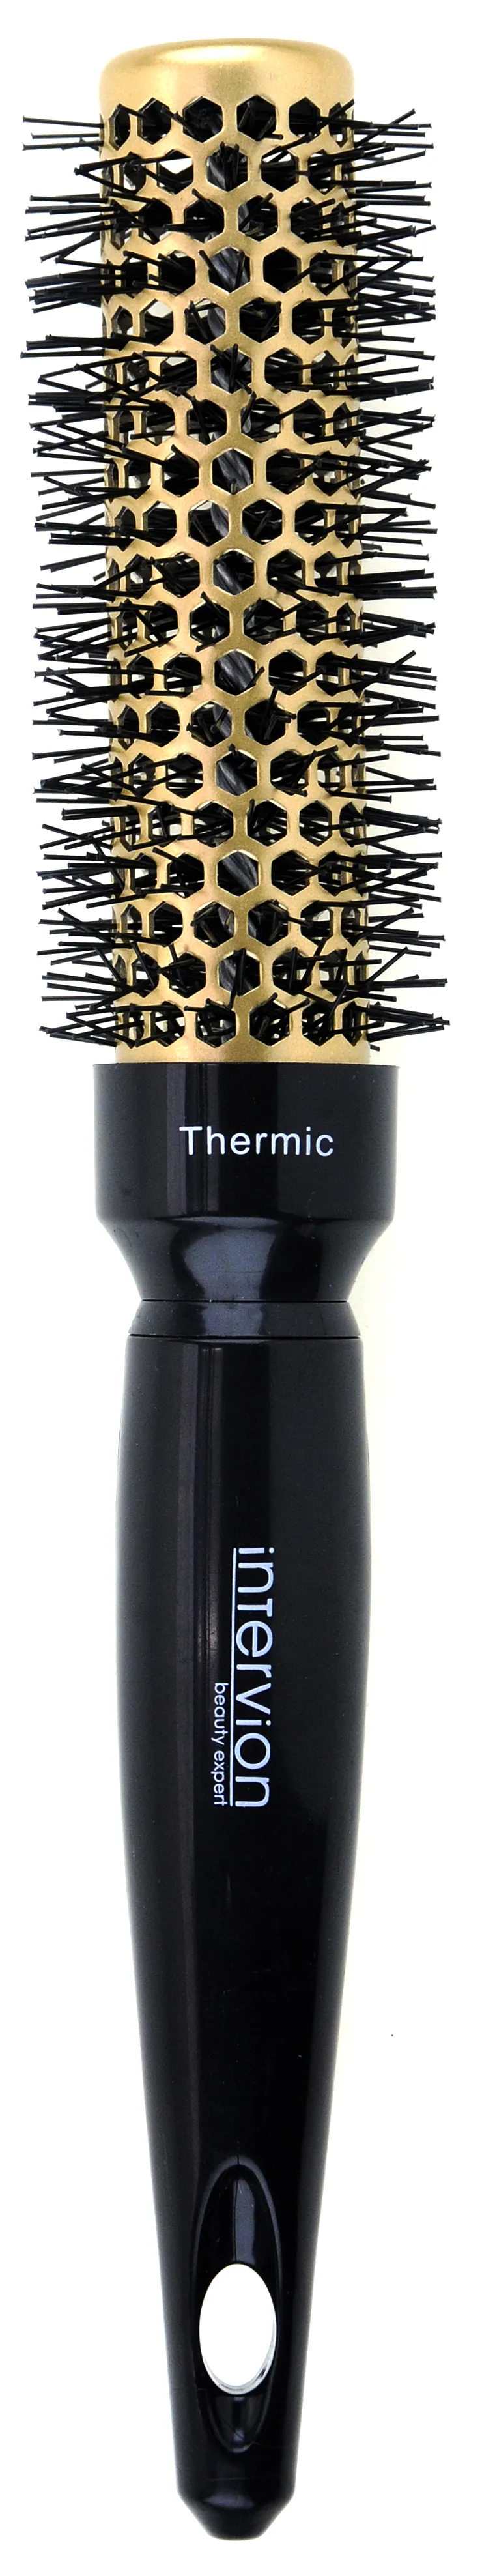 Intervion Gold Label Termic szczotka do modelowania włosów, 25 mm, 1 szt.